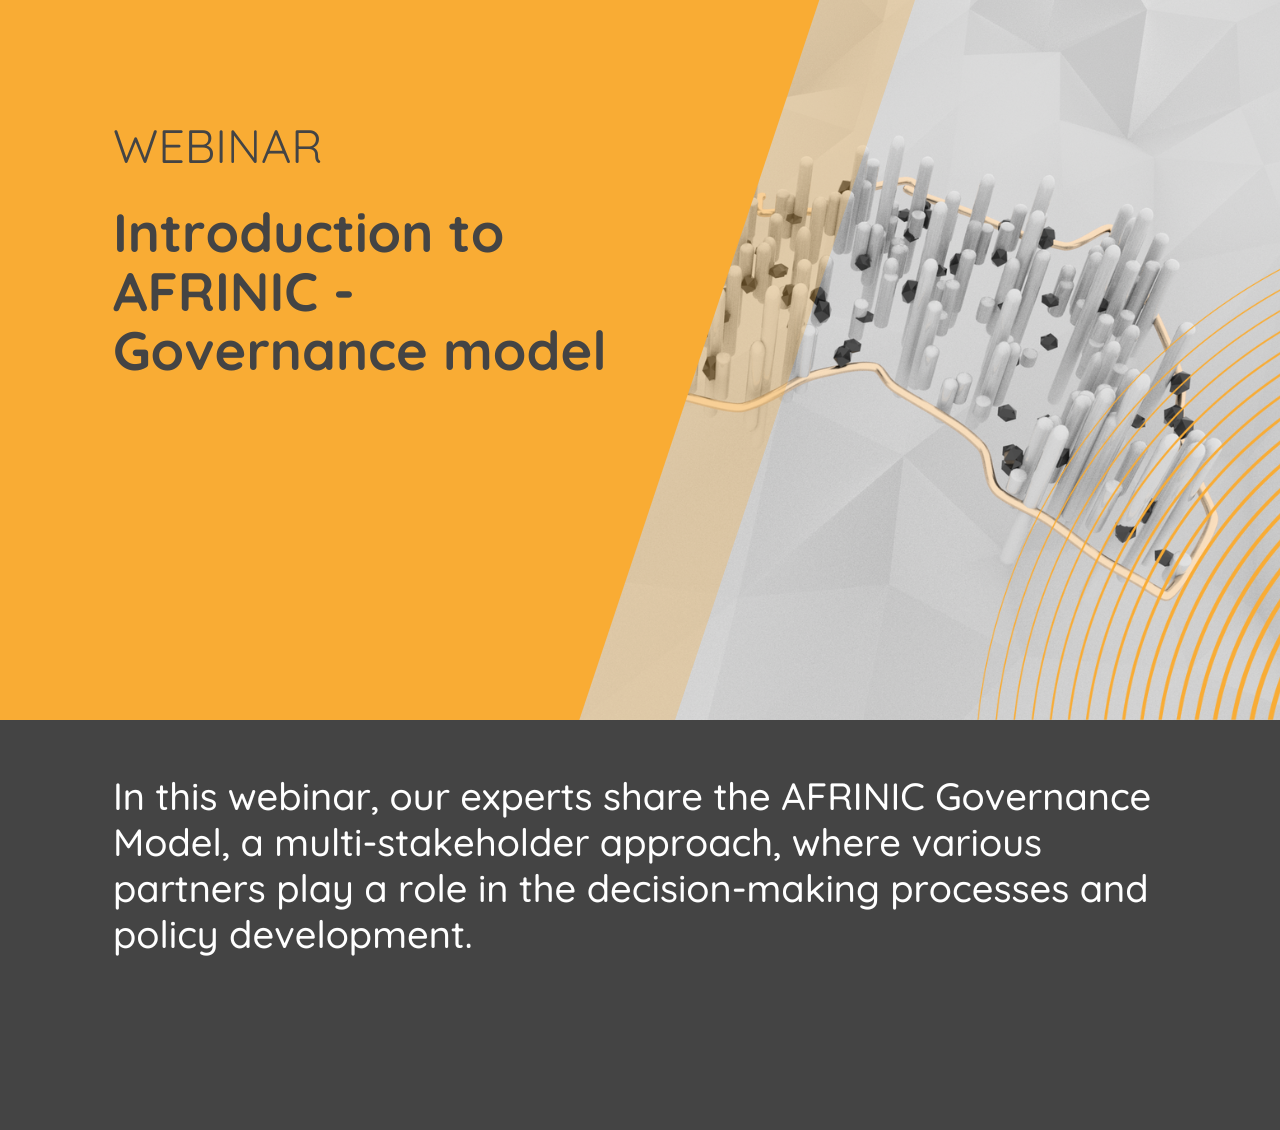 Introdução ao modelo de governança AFRINIC